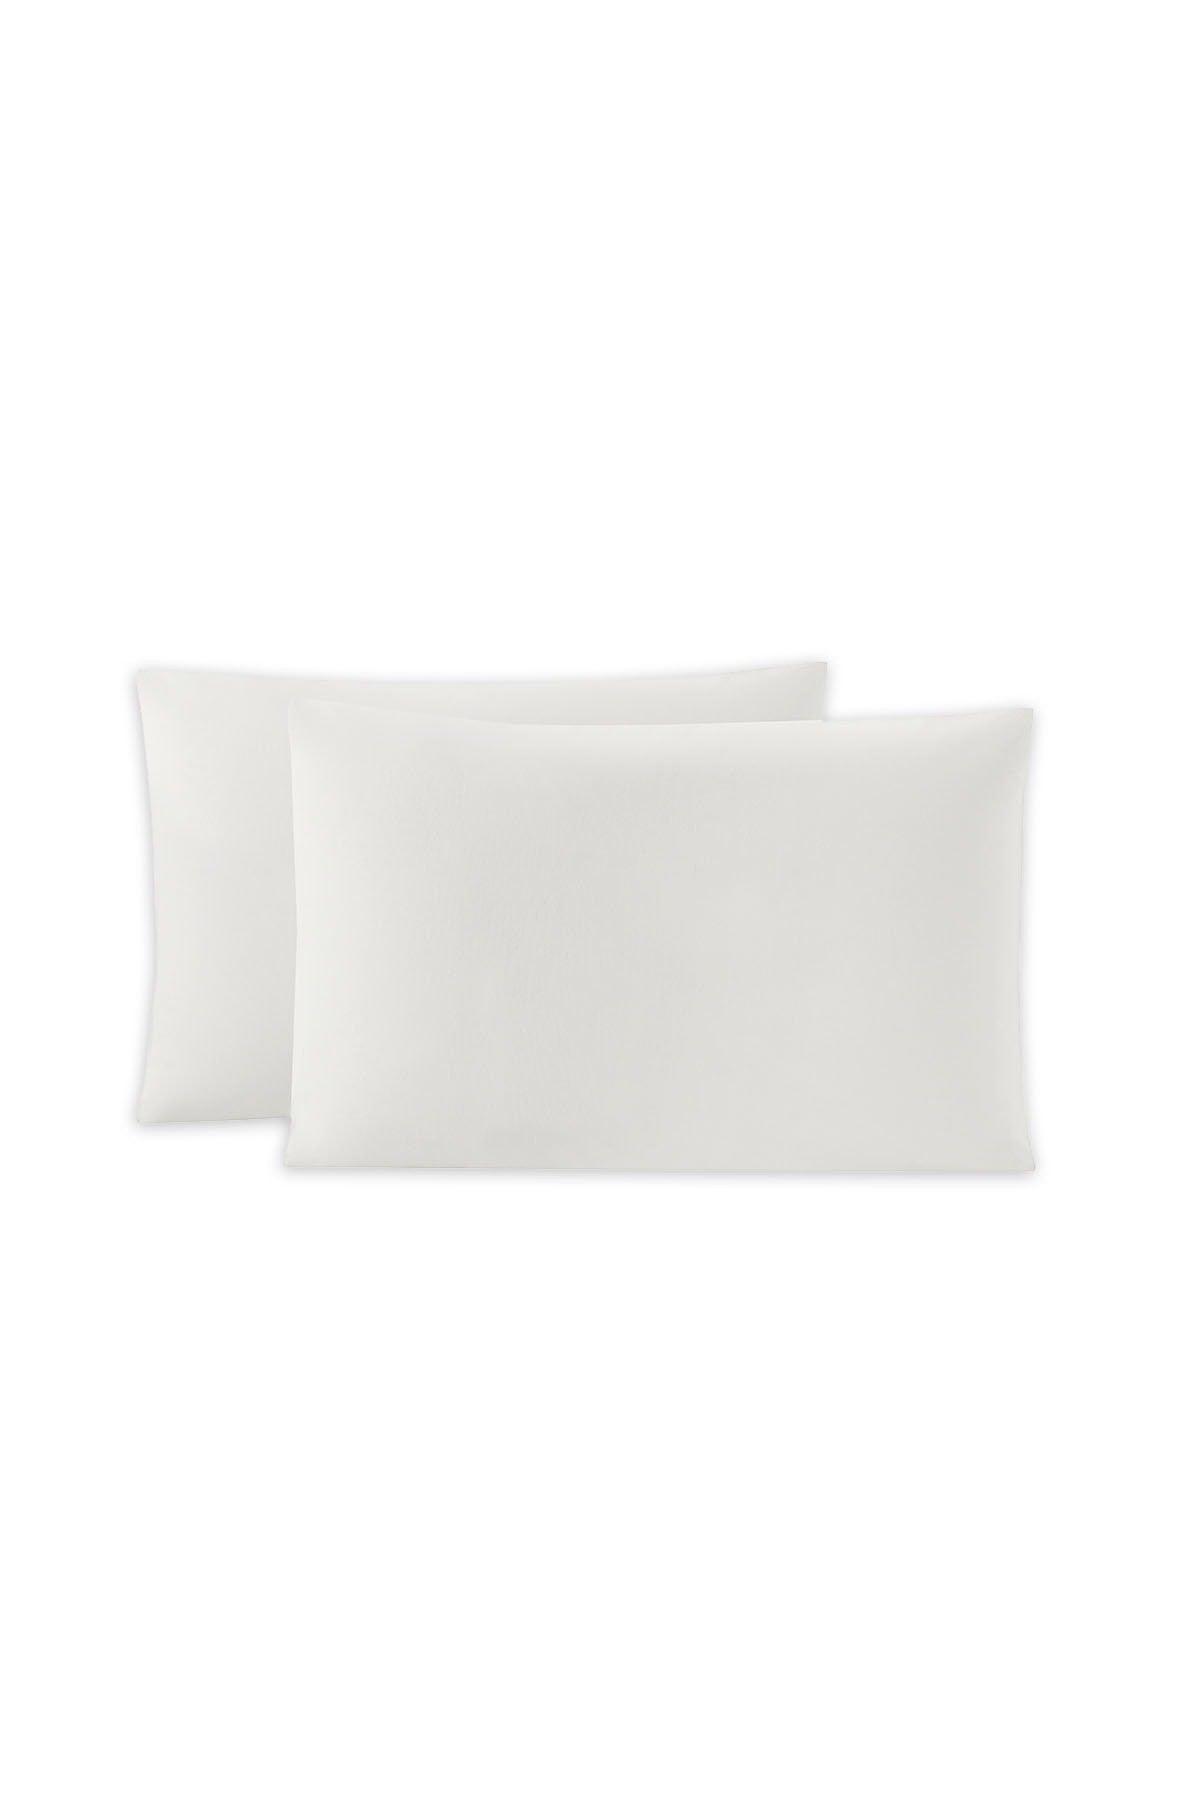 Ecru Noah Standard Pillow Cover 2 pcs (50x70 cm) - Swordslife